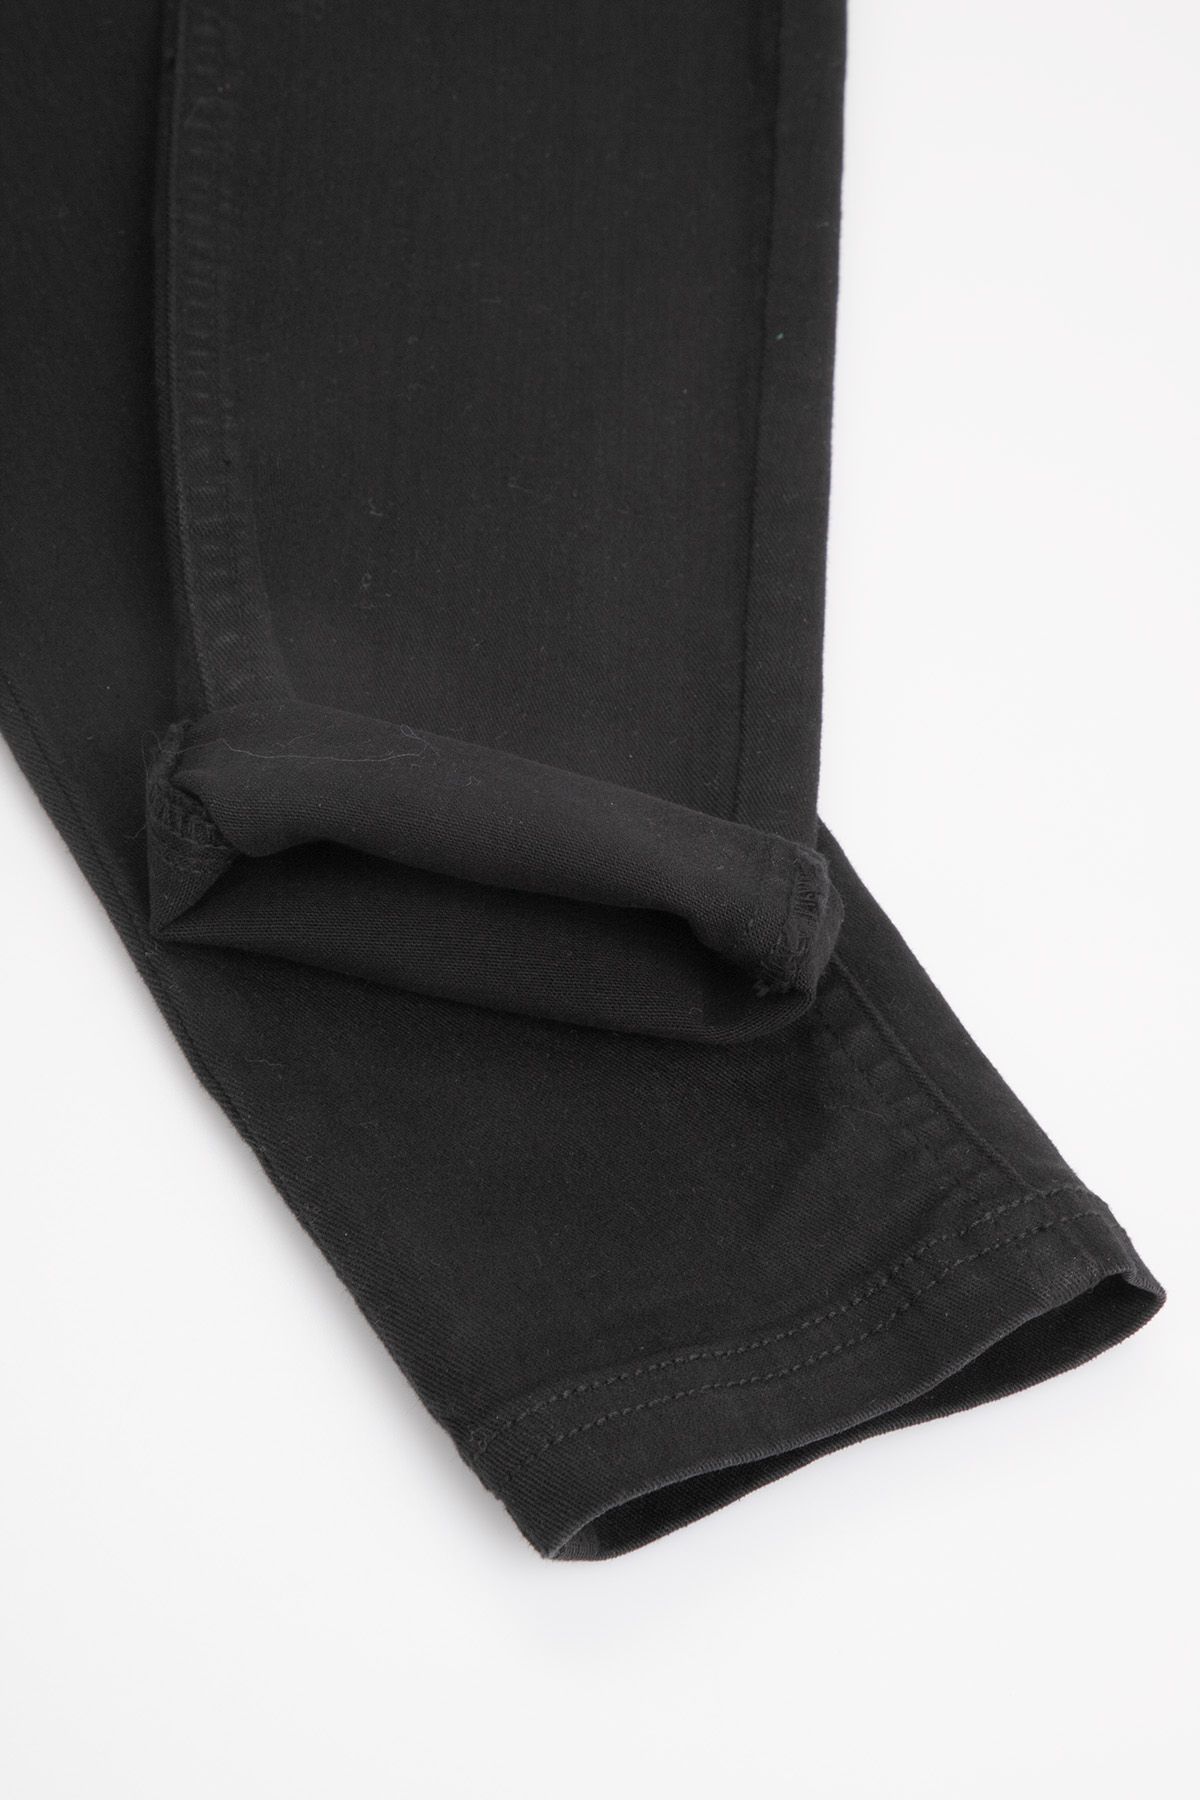 Spodnie jeansowe czarne ze zwężaną nogawką 2220112